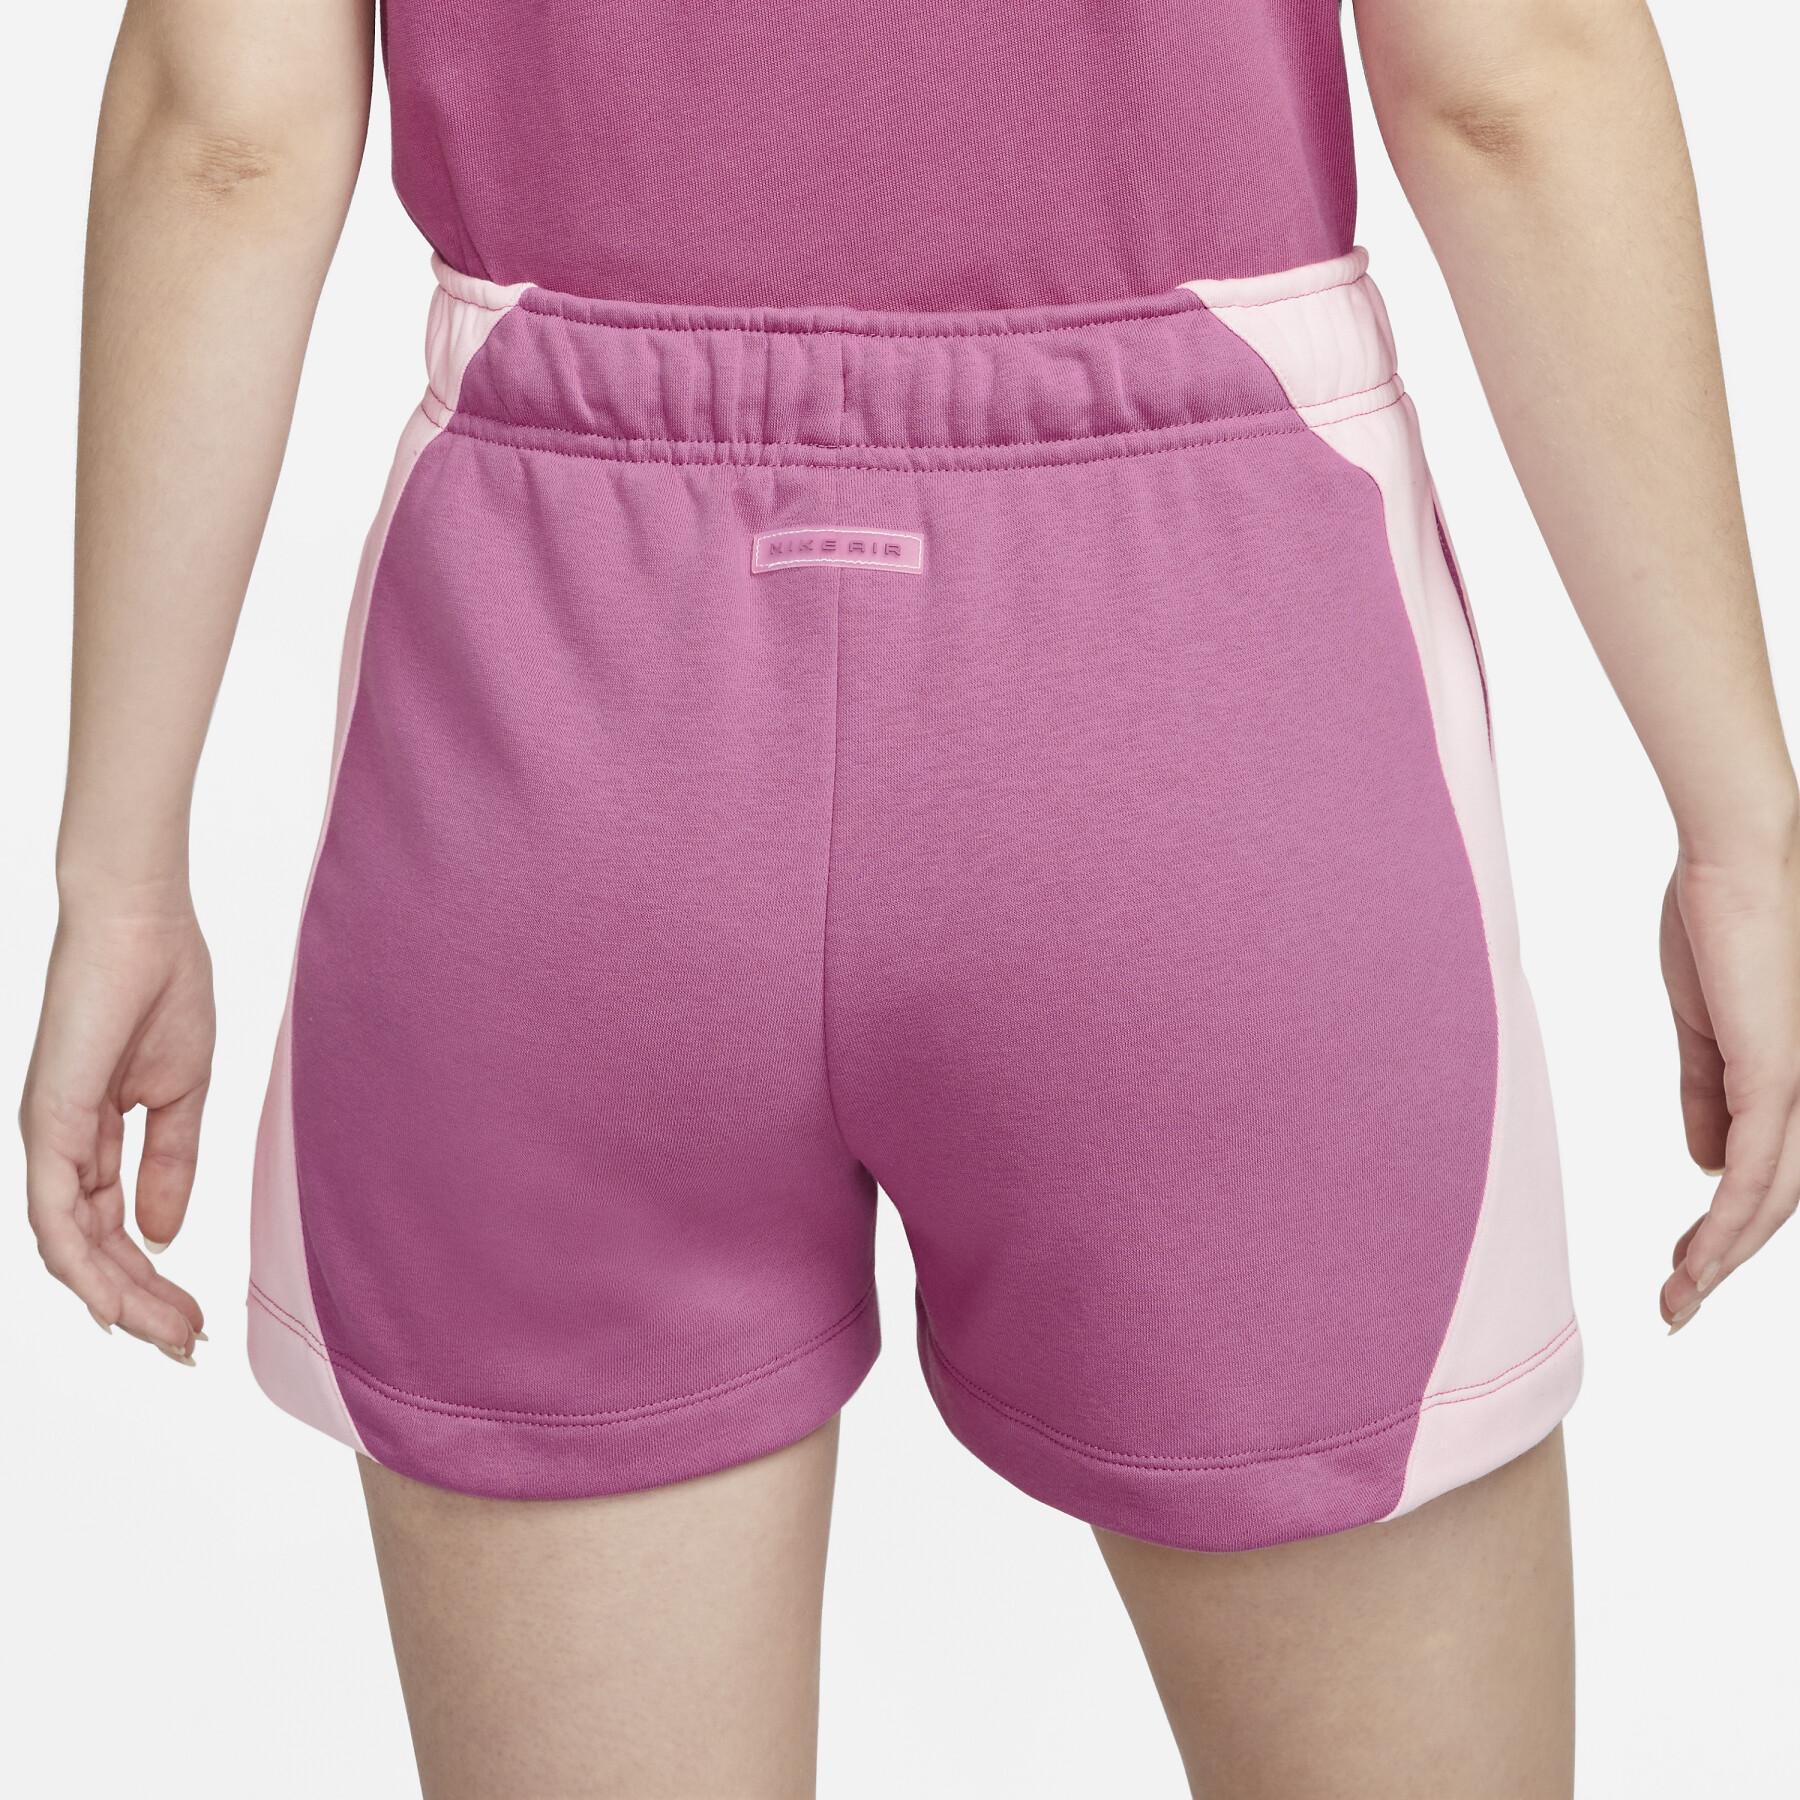 Pantalón corto de forro polar mujer Nike Air Fleece MR